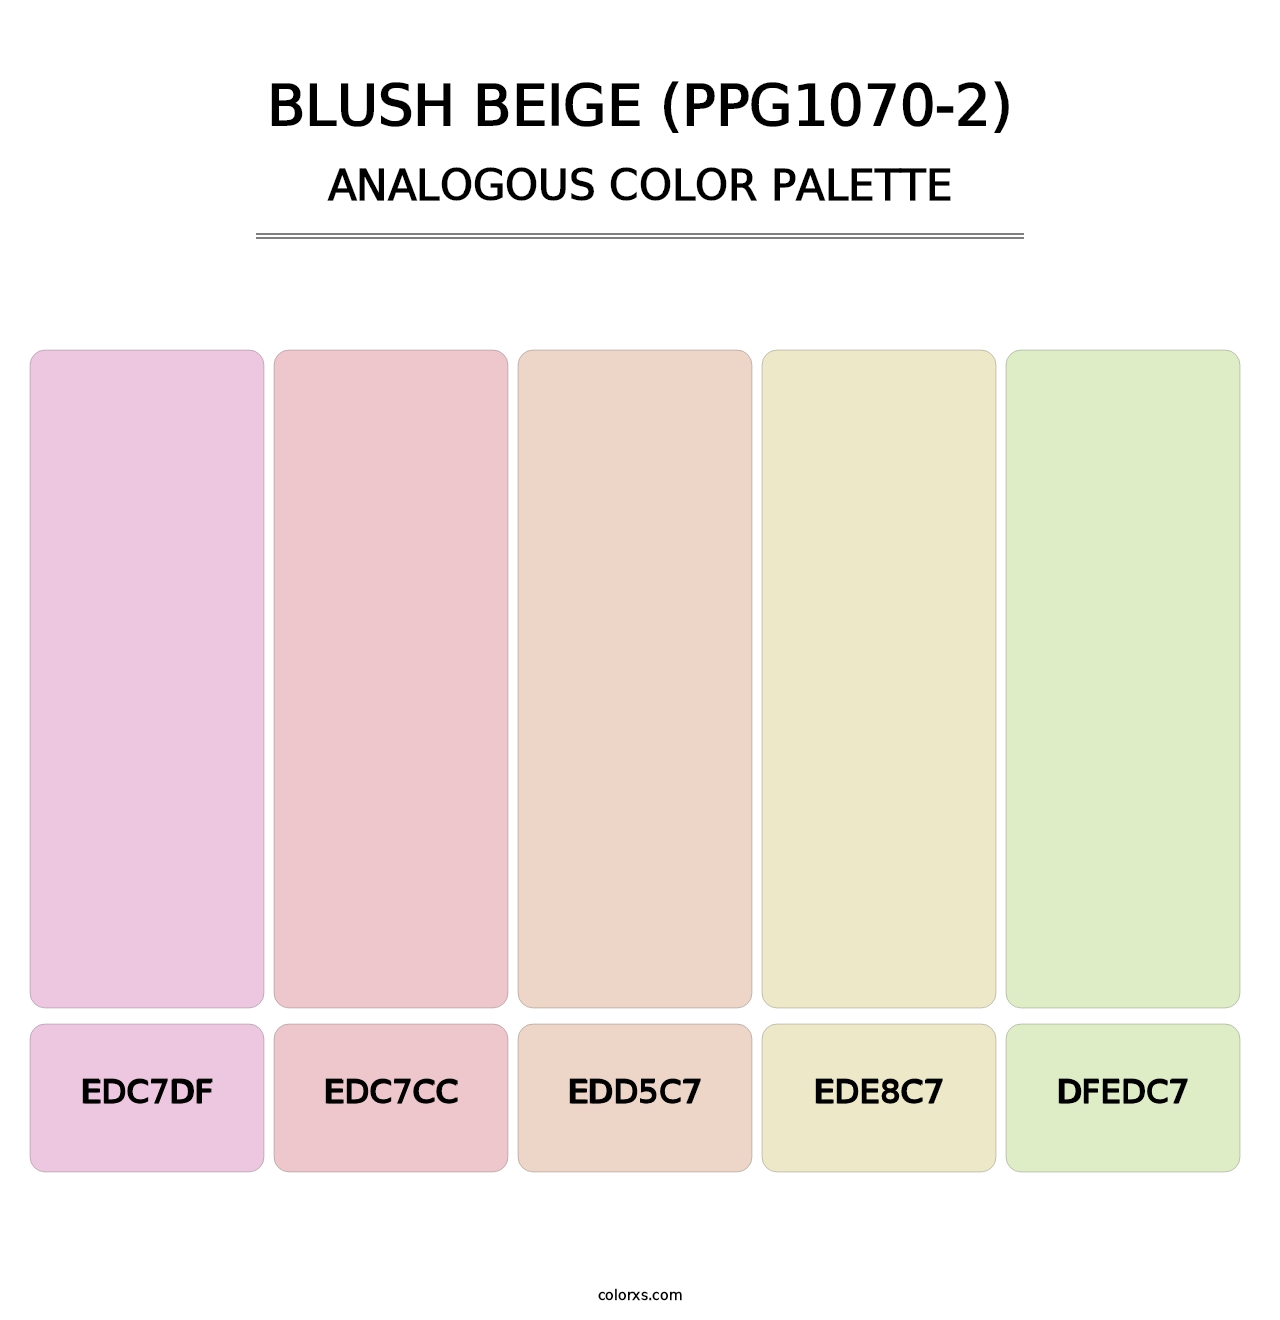 Blush Beige (PPG1070-2) - Analogous Color Palette